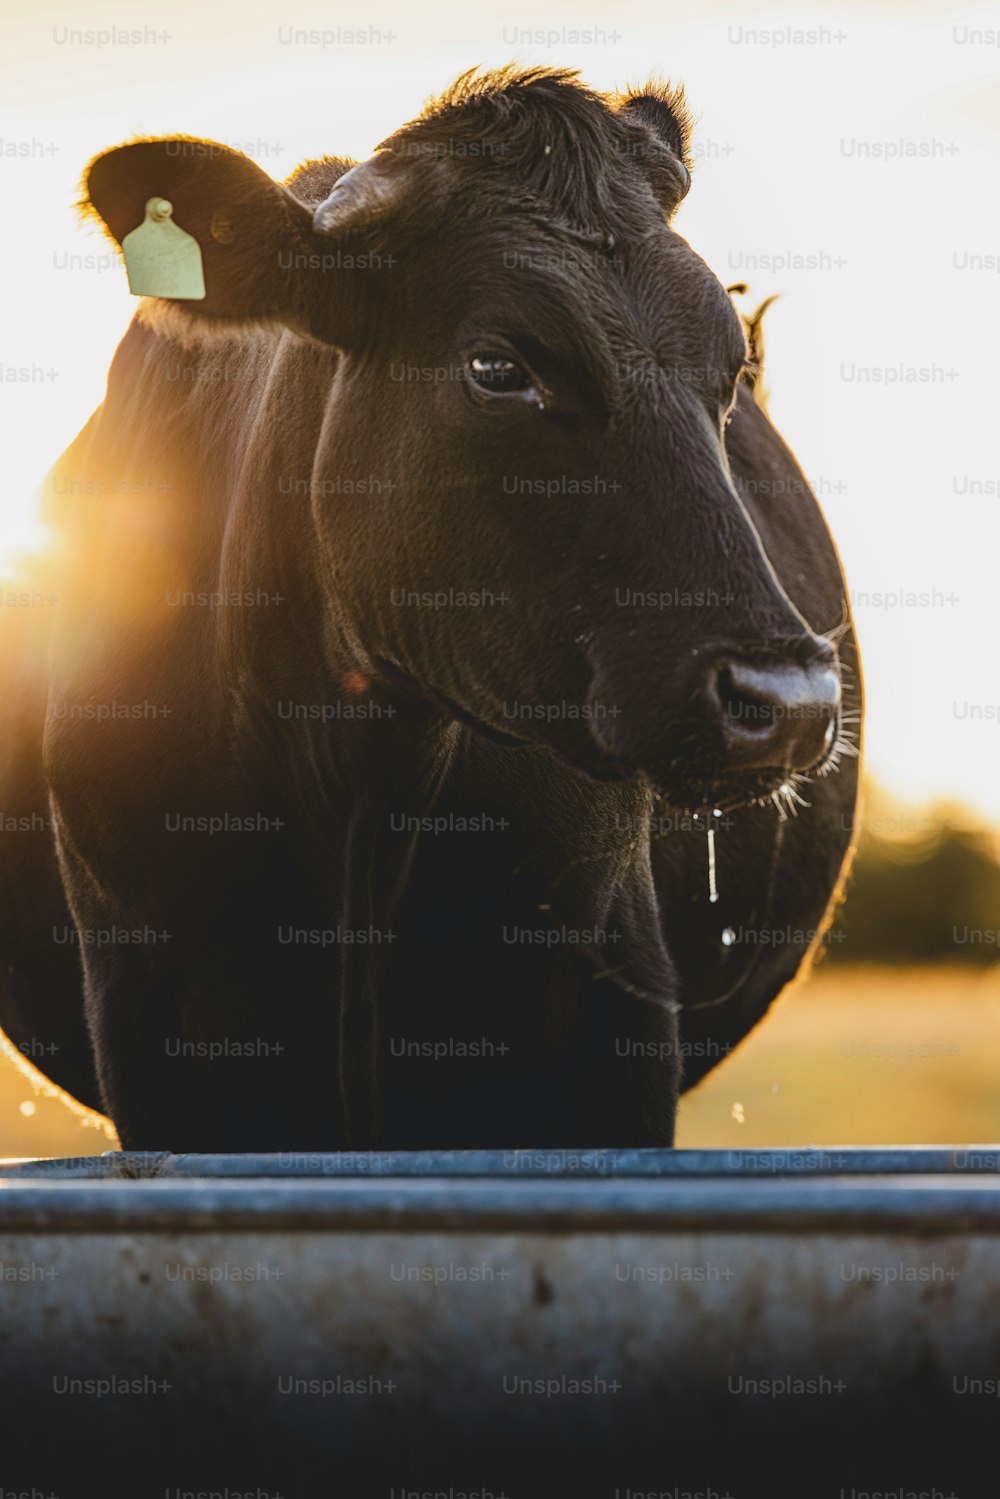 풀로 덮인 들판 위에 서 있는 검은 소